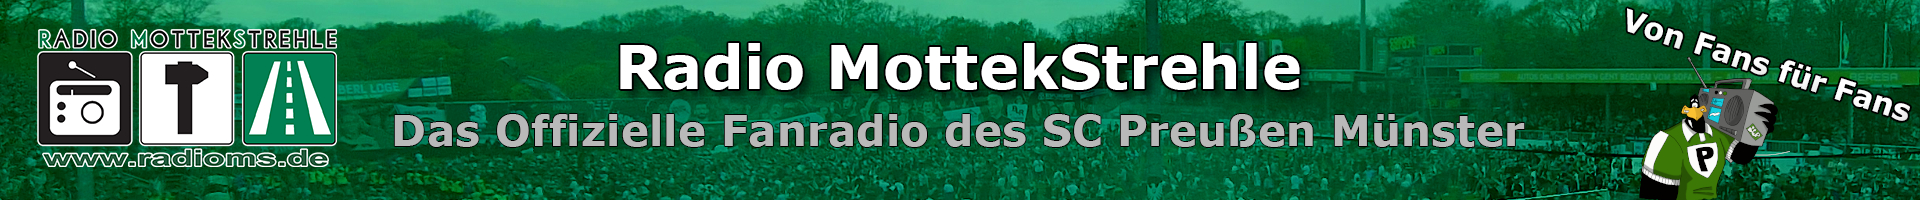 RadioMottekStrehle